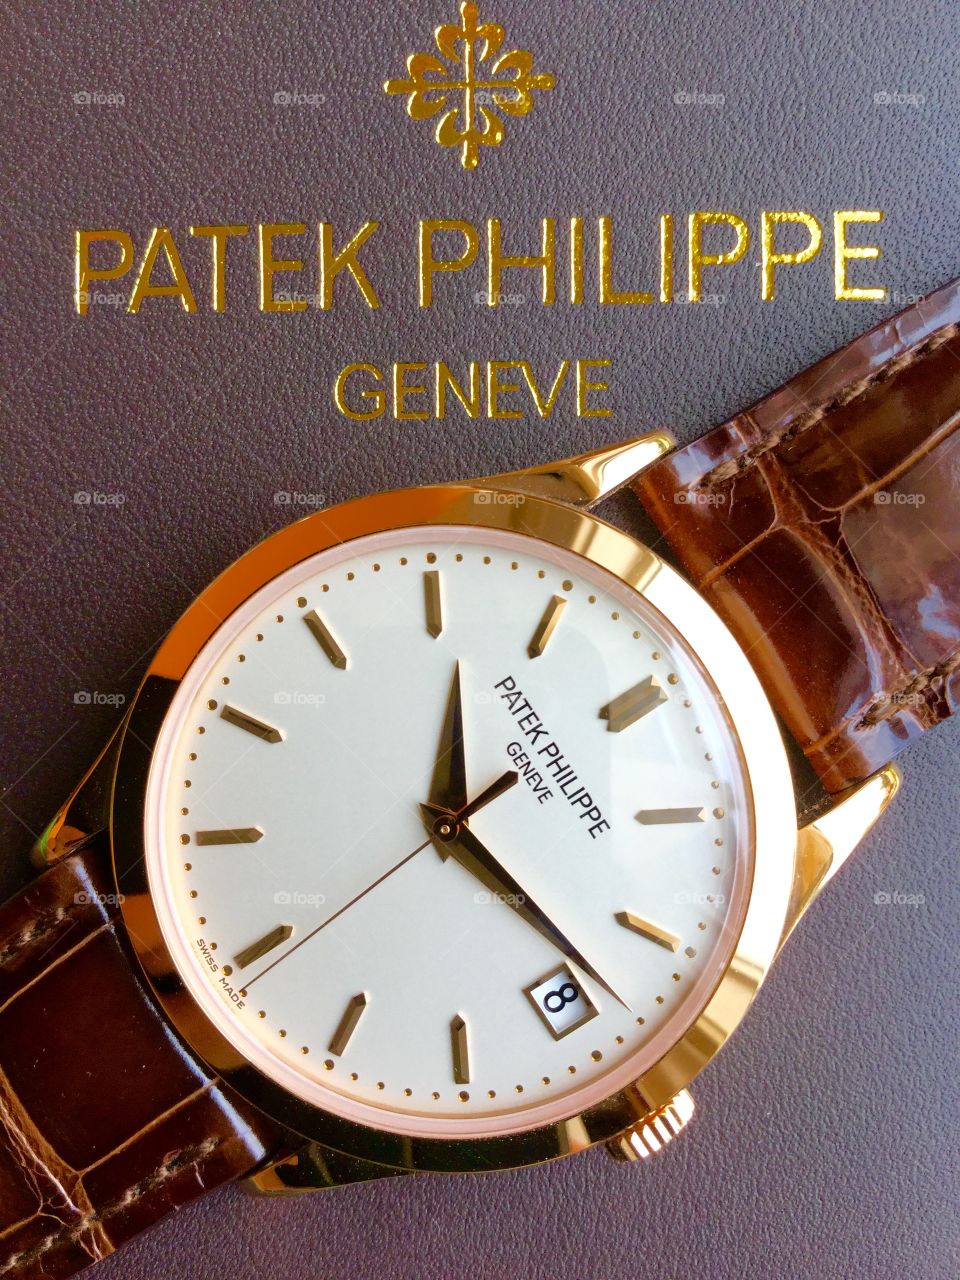 PATEK PHILIPPE CALTRAVA 5296R-010